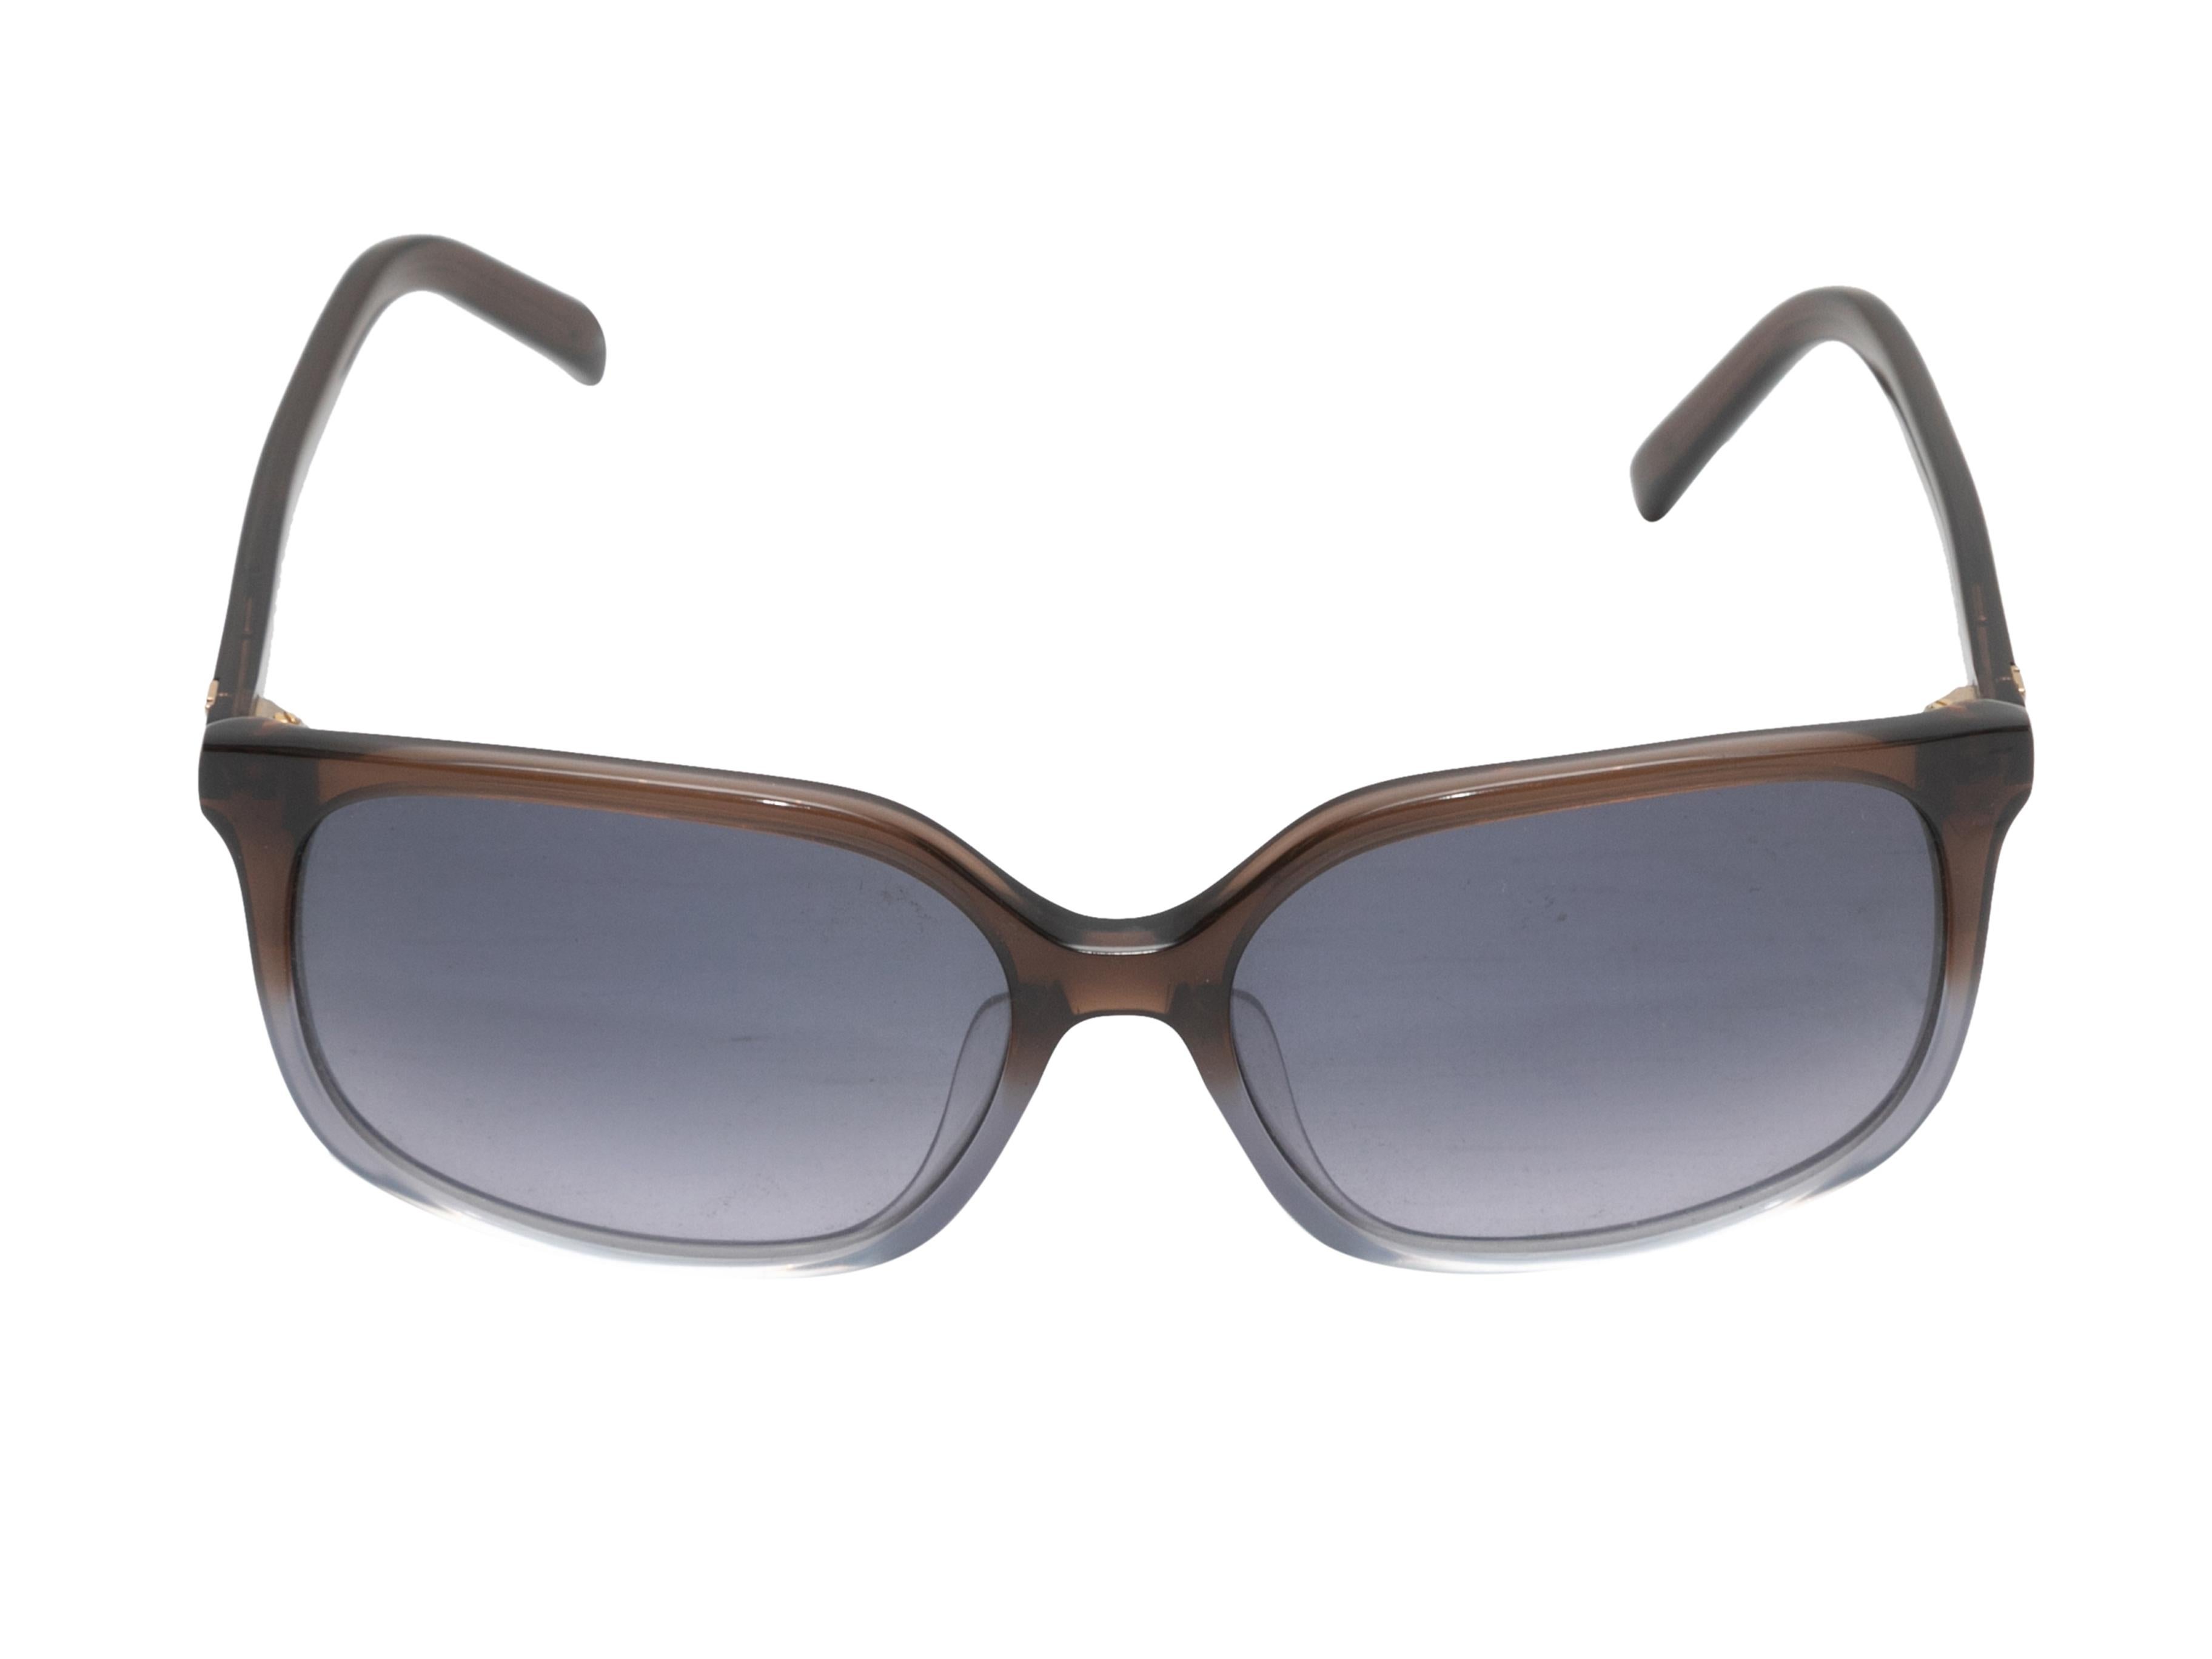 Braune und blaue Acetat-Sonnenbrille von Fendi in Ombre-Optik. Blau getönte Gläser. 2